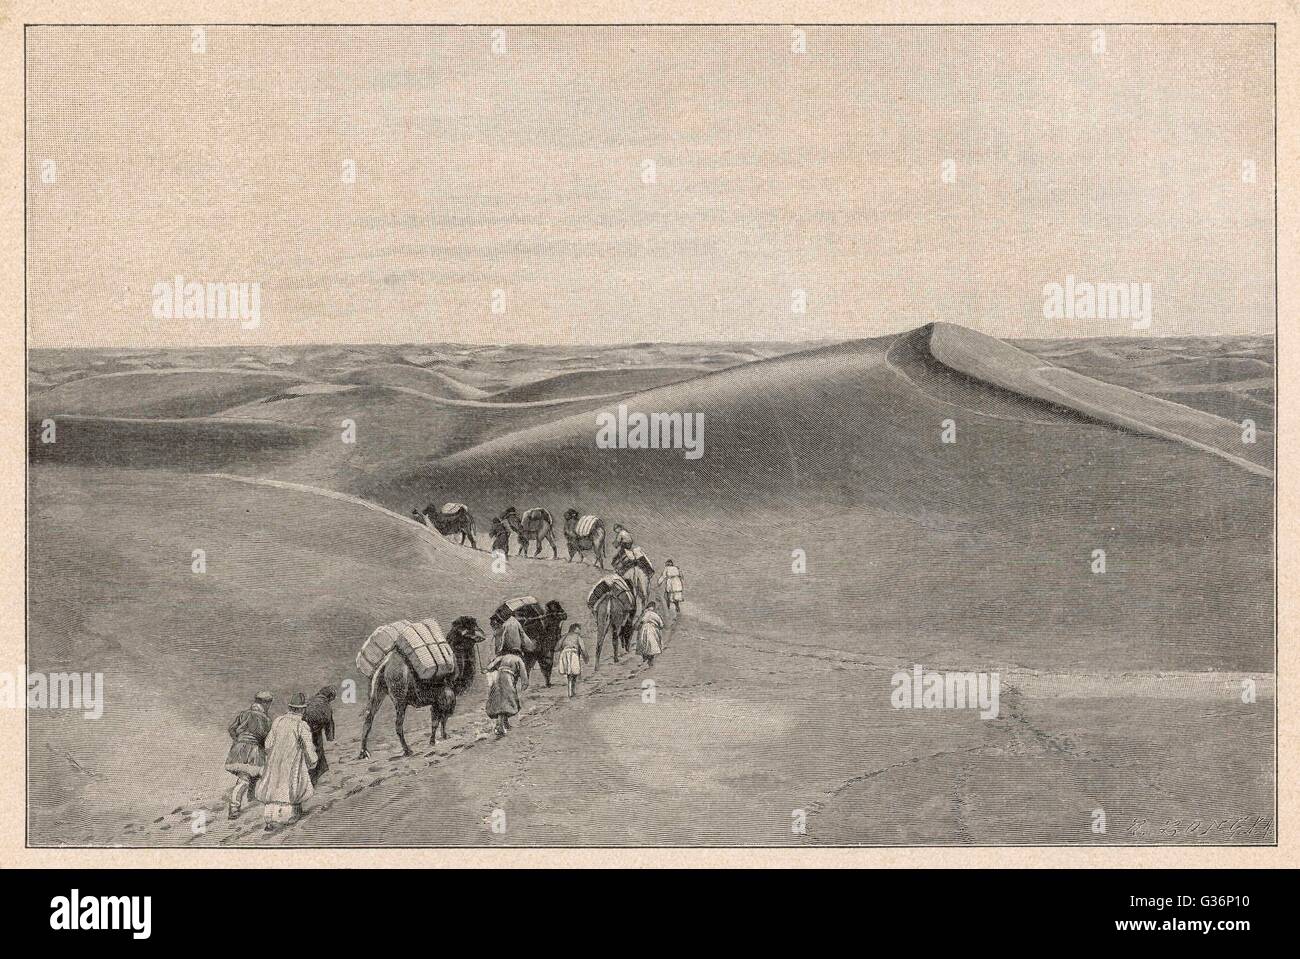 Ein Kamel Zug auf einer Handelsroute in der zentralasiatischen Wüste.          Datum: 19. Jahrhundert Stockfoto